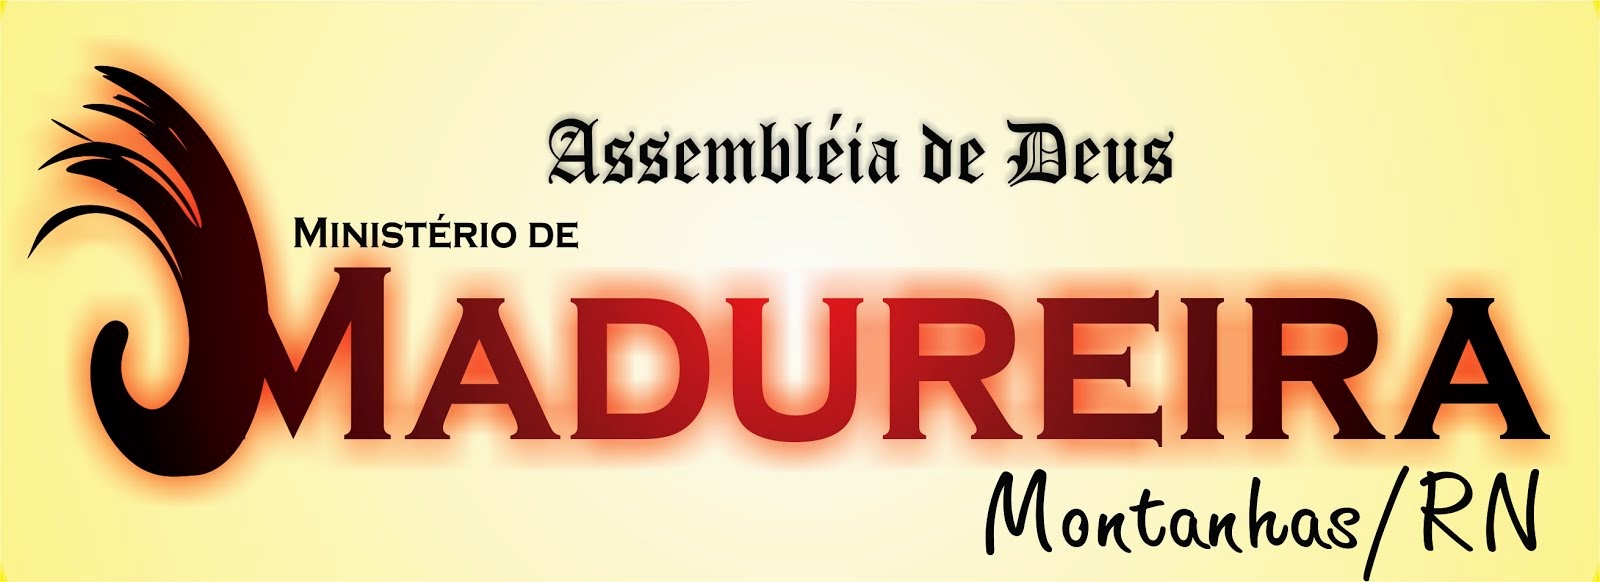 Assembléia de Deus Ministério de Madureira Montanhas